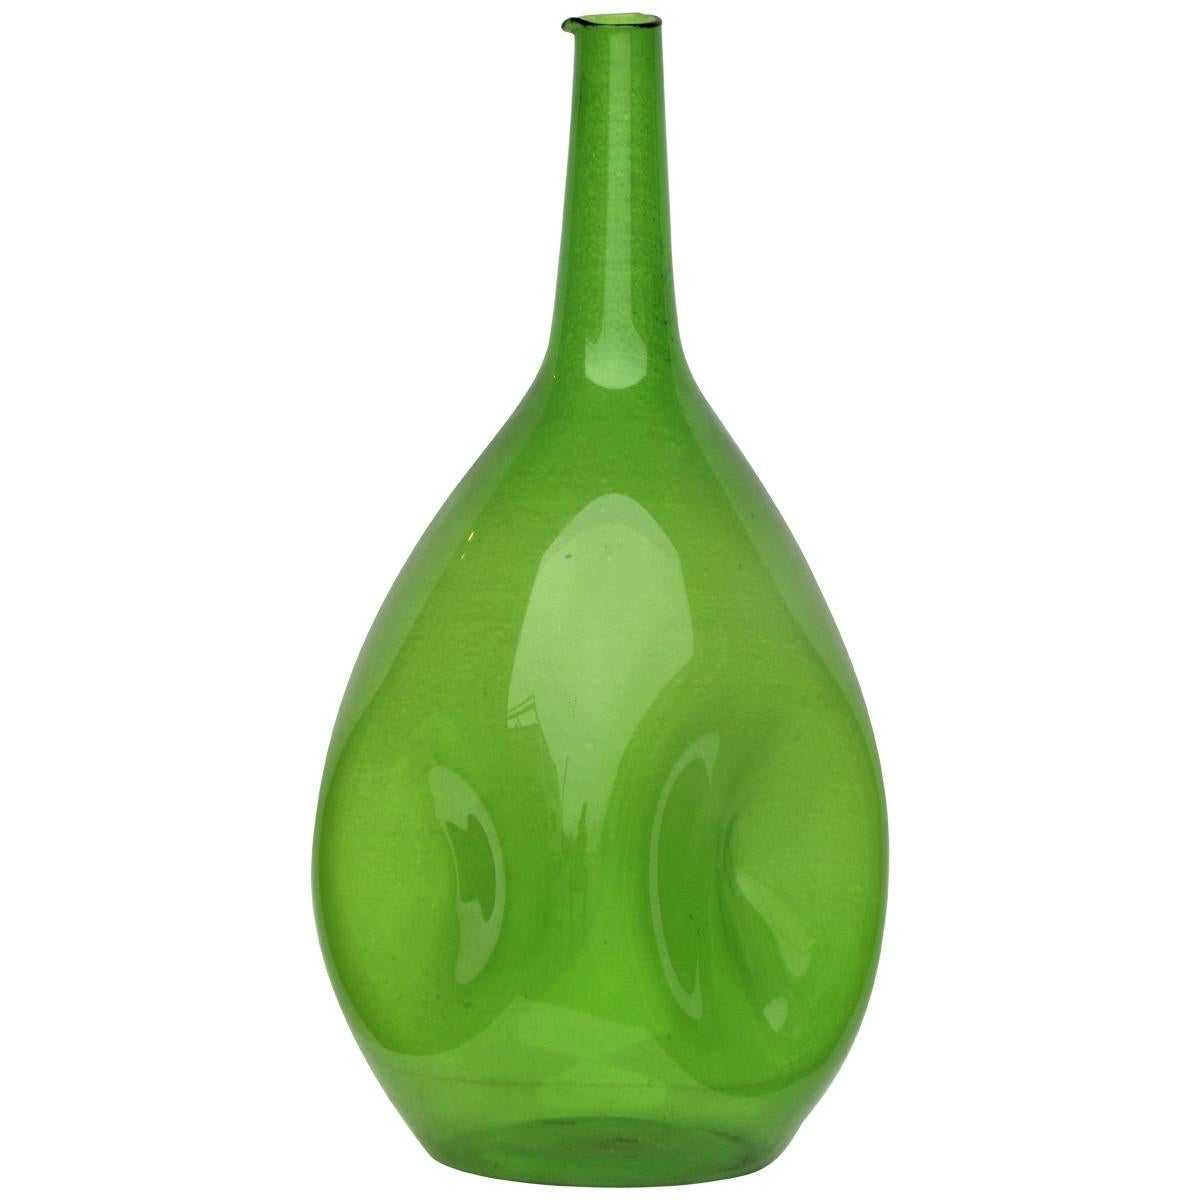 Zeller Glass Company Luminous Green Blown Glass Vessel